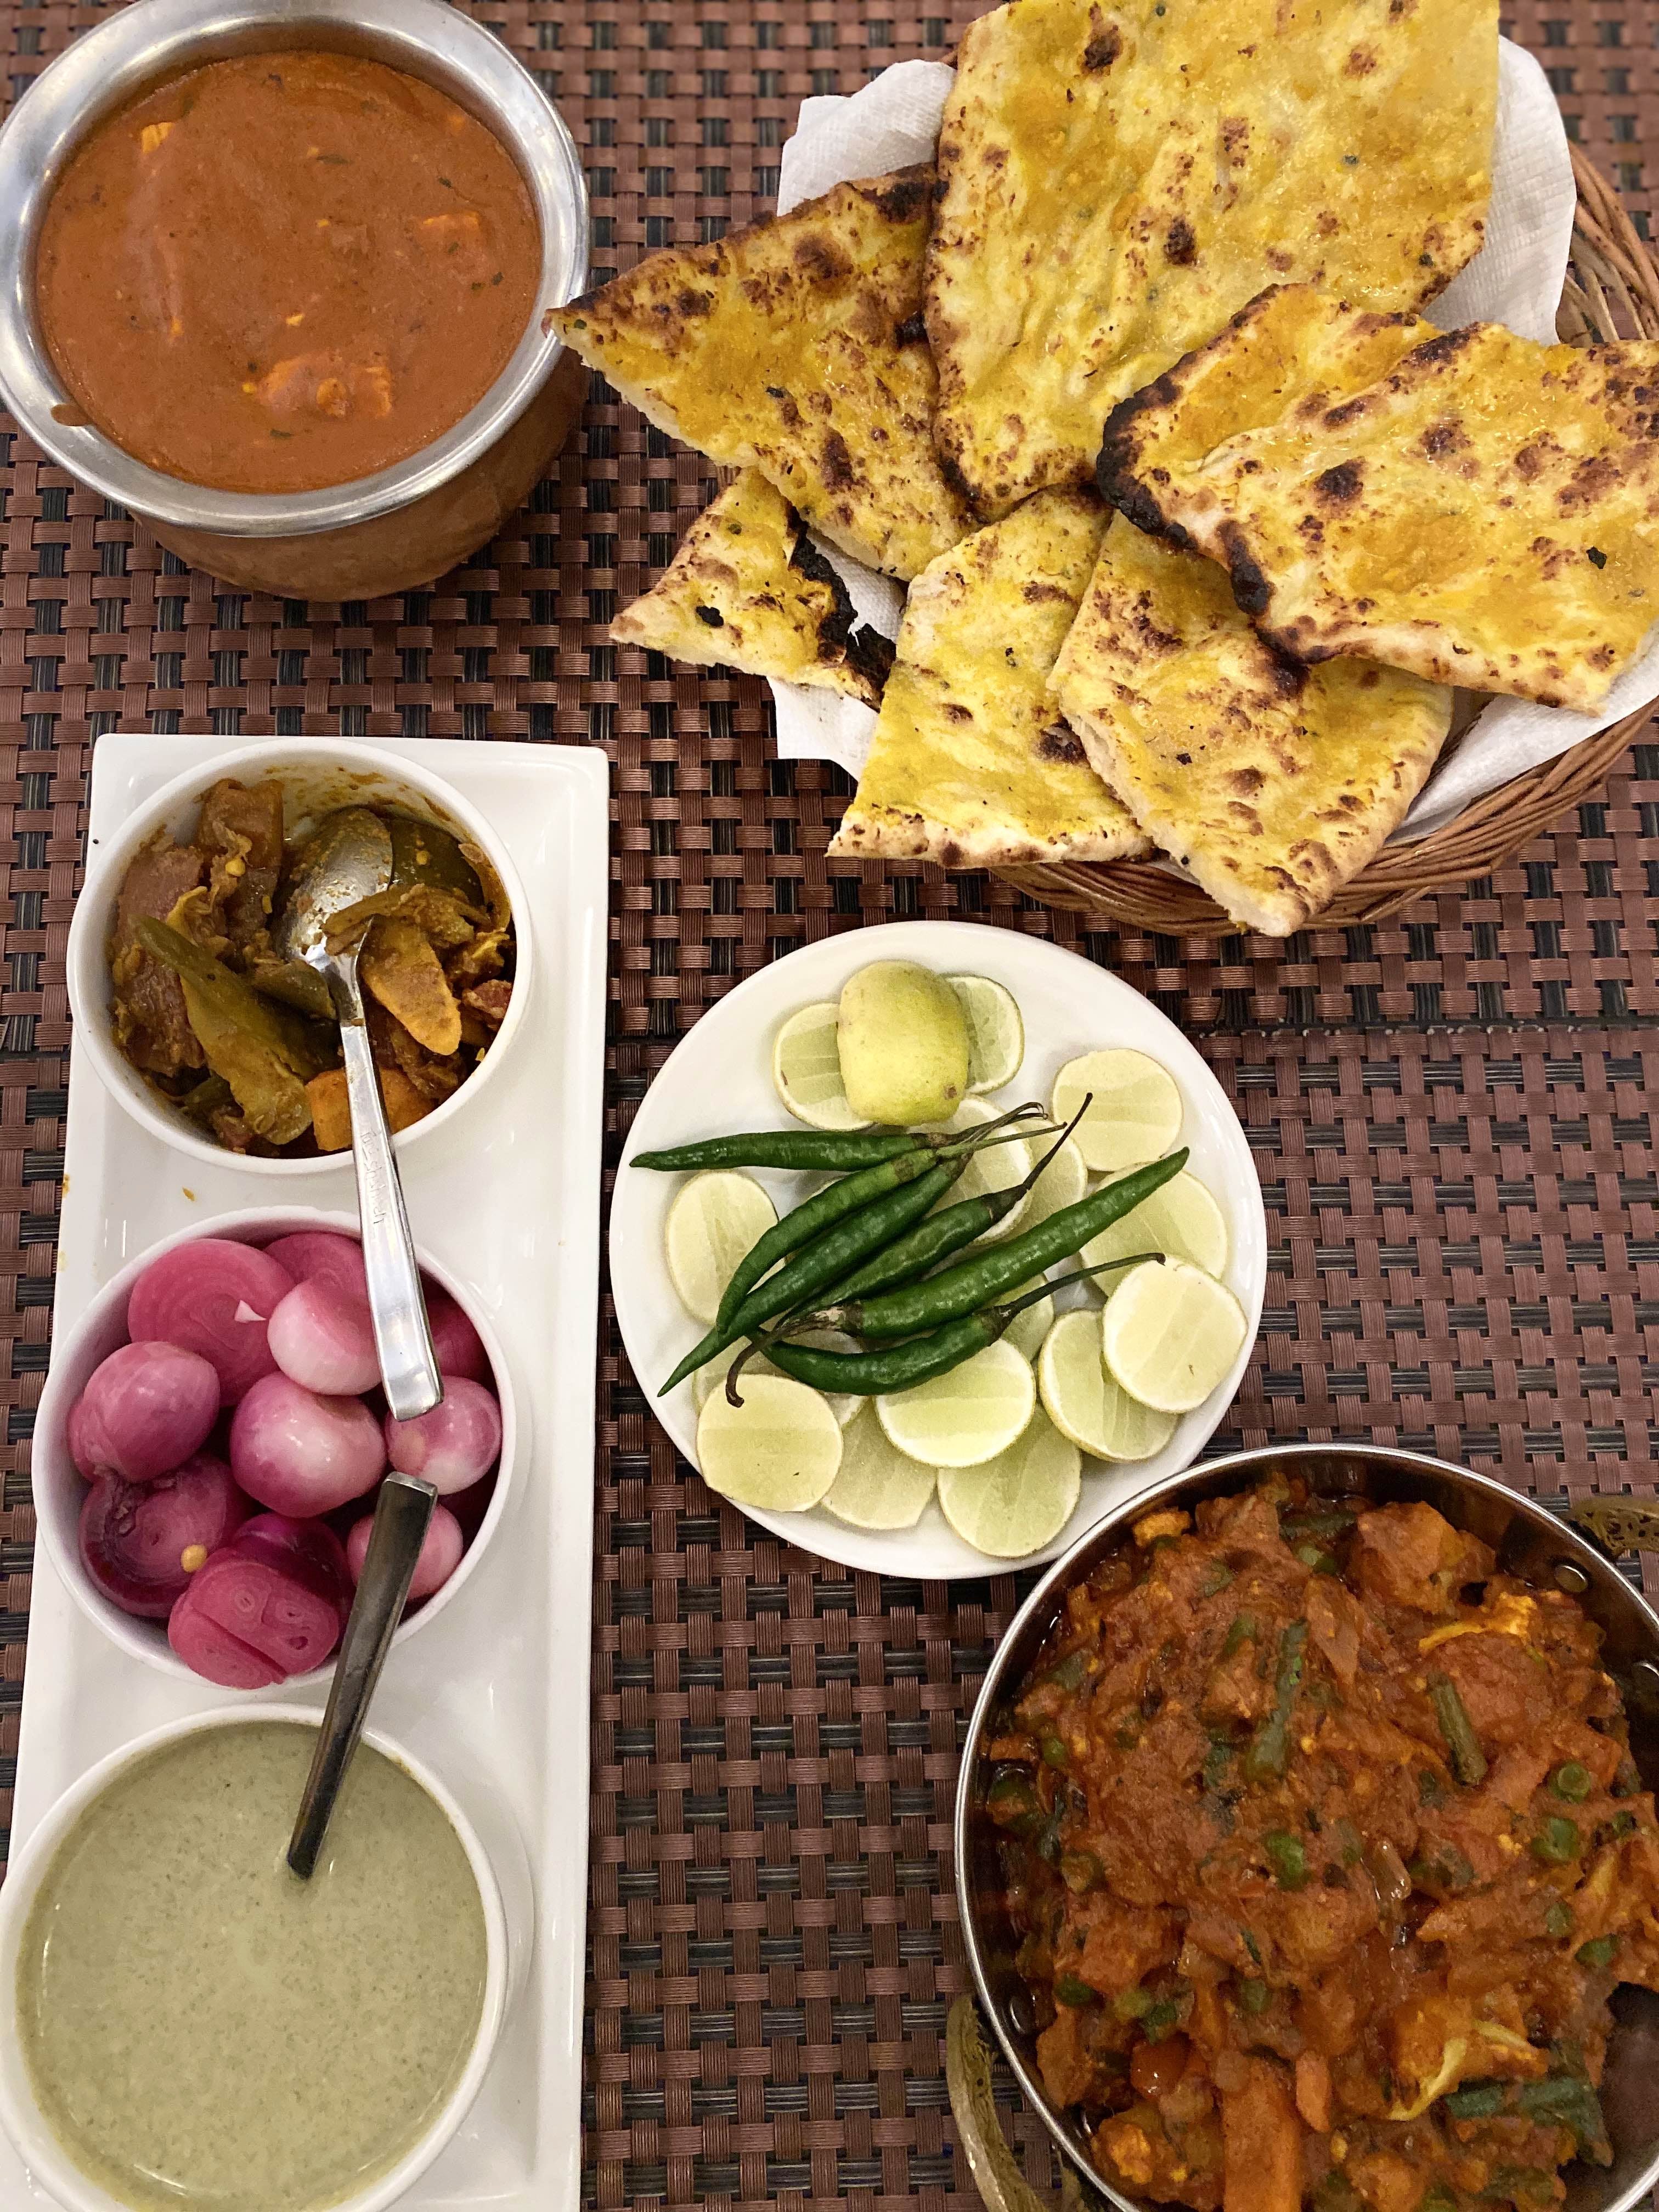 Dish,Food,Cuisine,Naan,Ingredient,Meal,Satay,Produce,Flatbread,Staple food